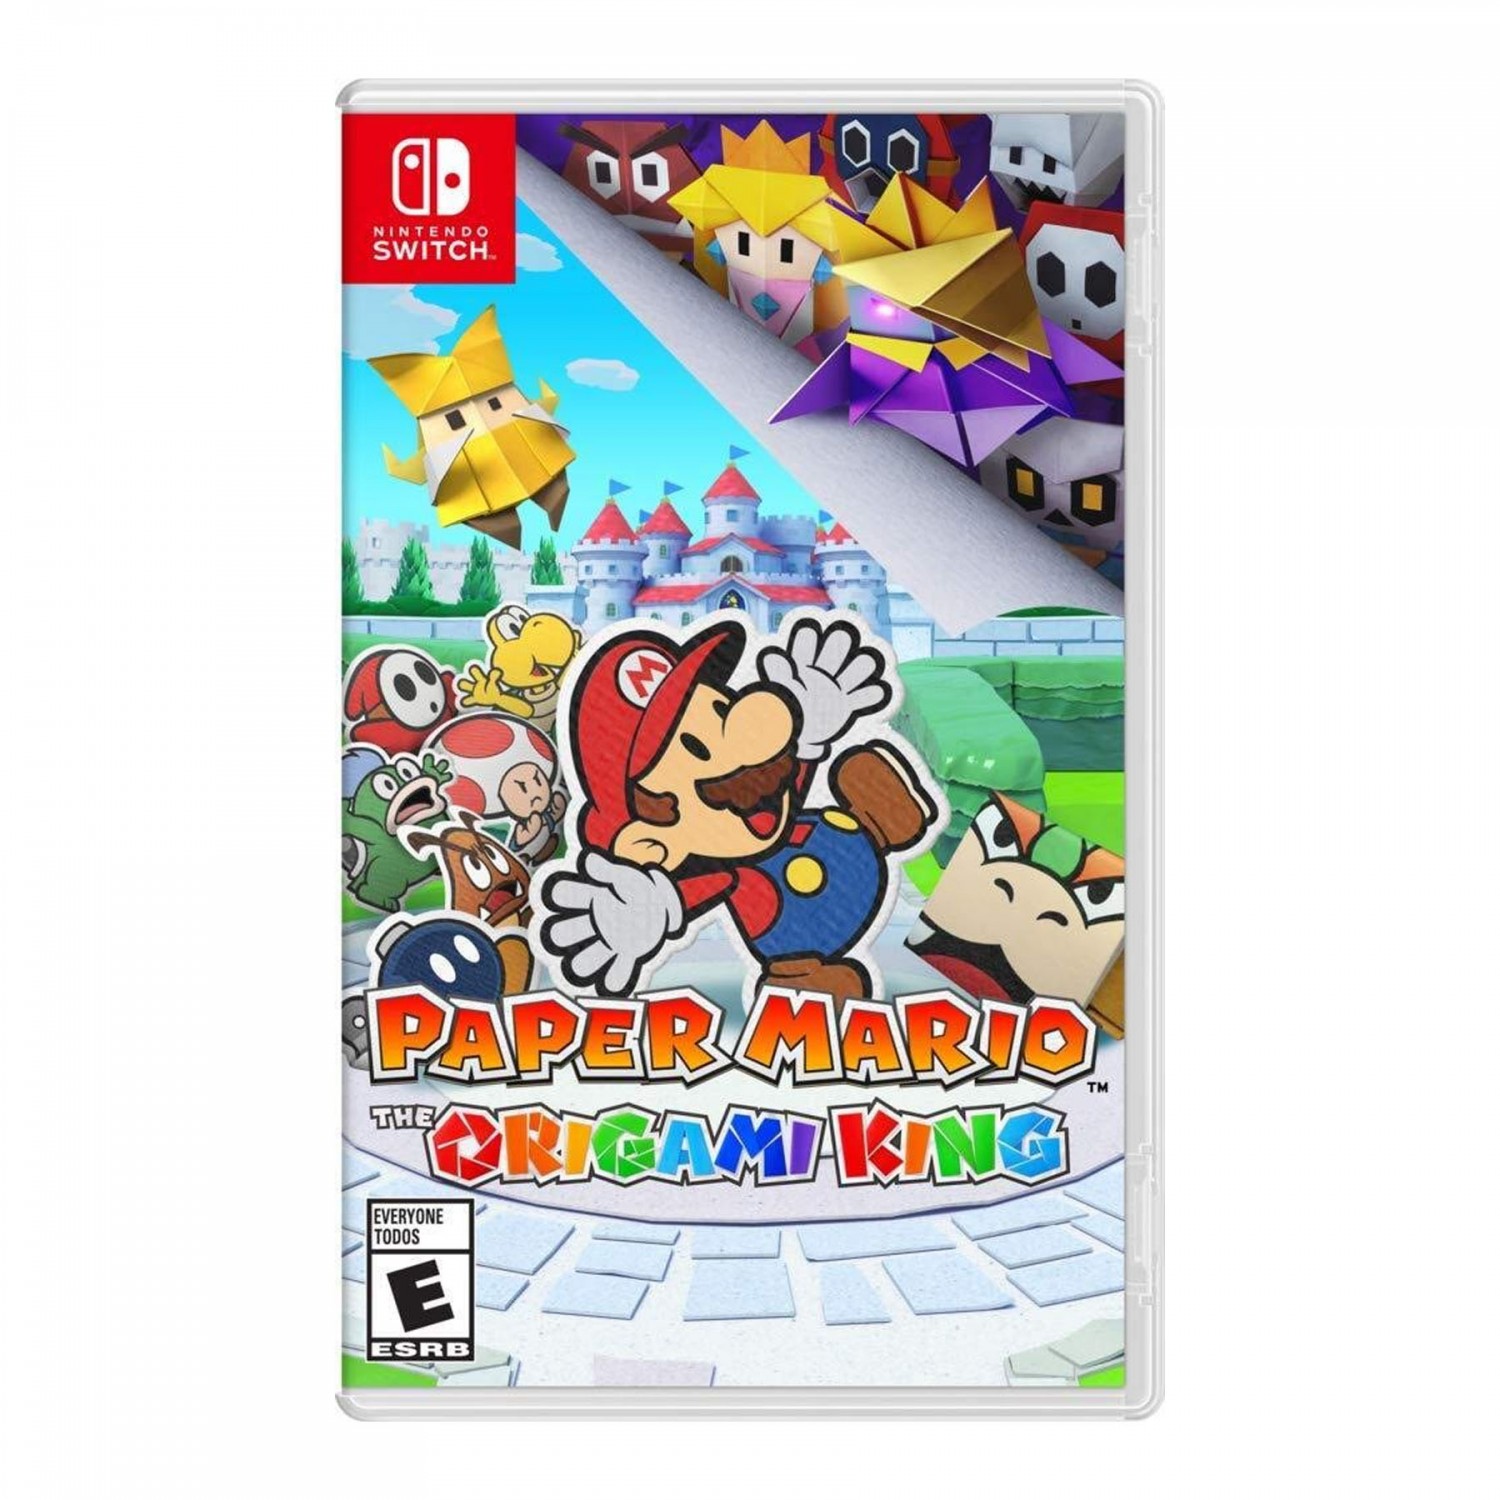 Ø¨Ø§Ø²ÛŒ Paper Mario: The Origami King - Nintendo Switch